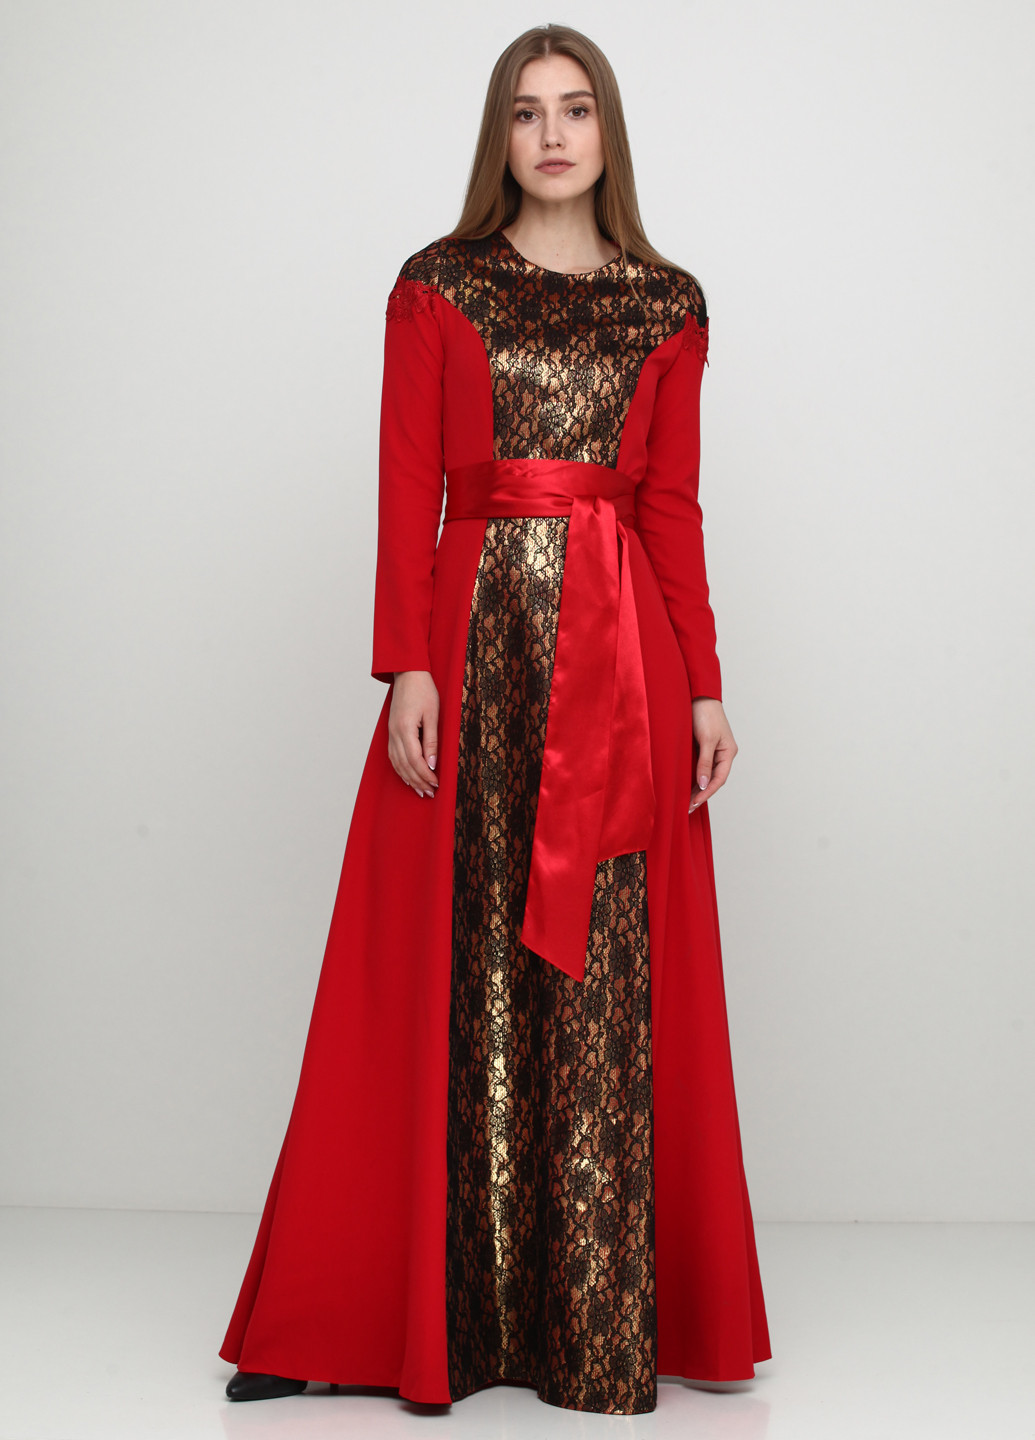 Червона вечірня сукня Imperial фактурна